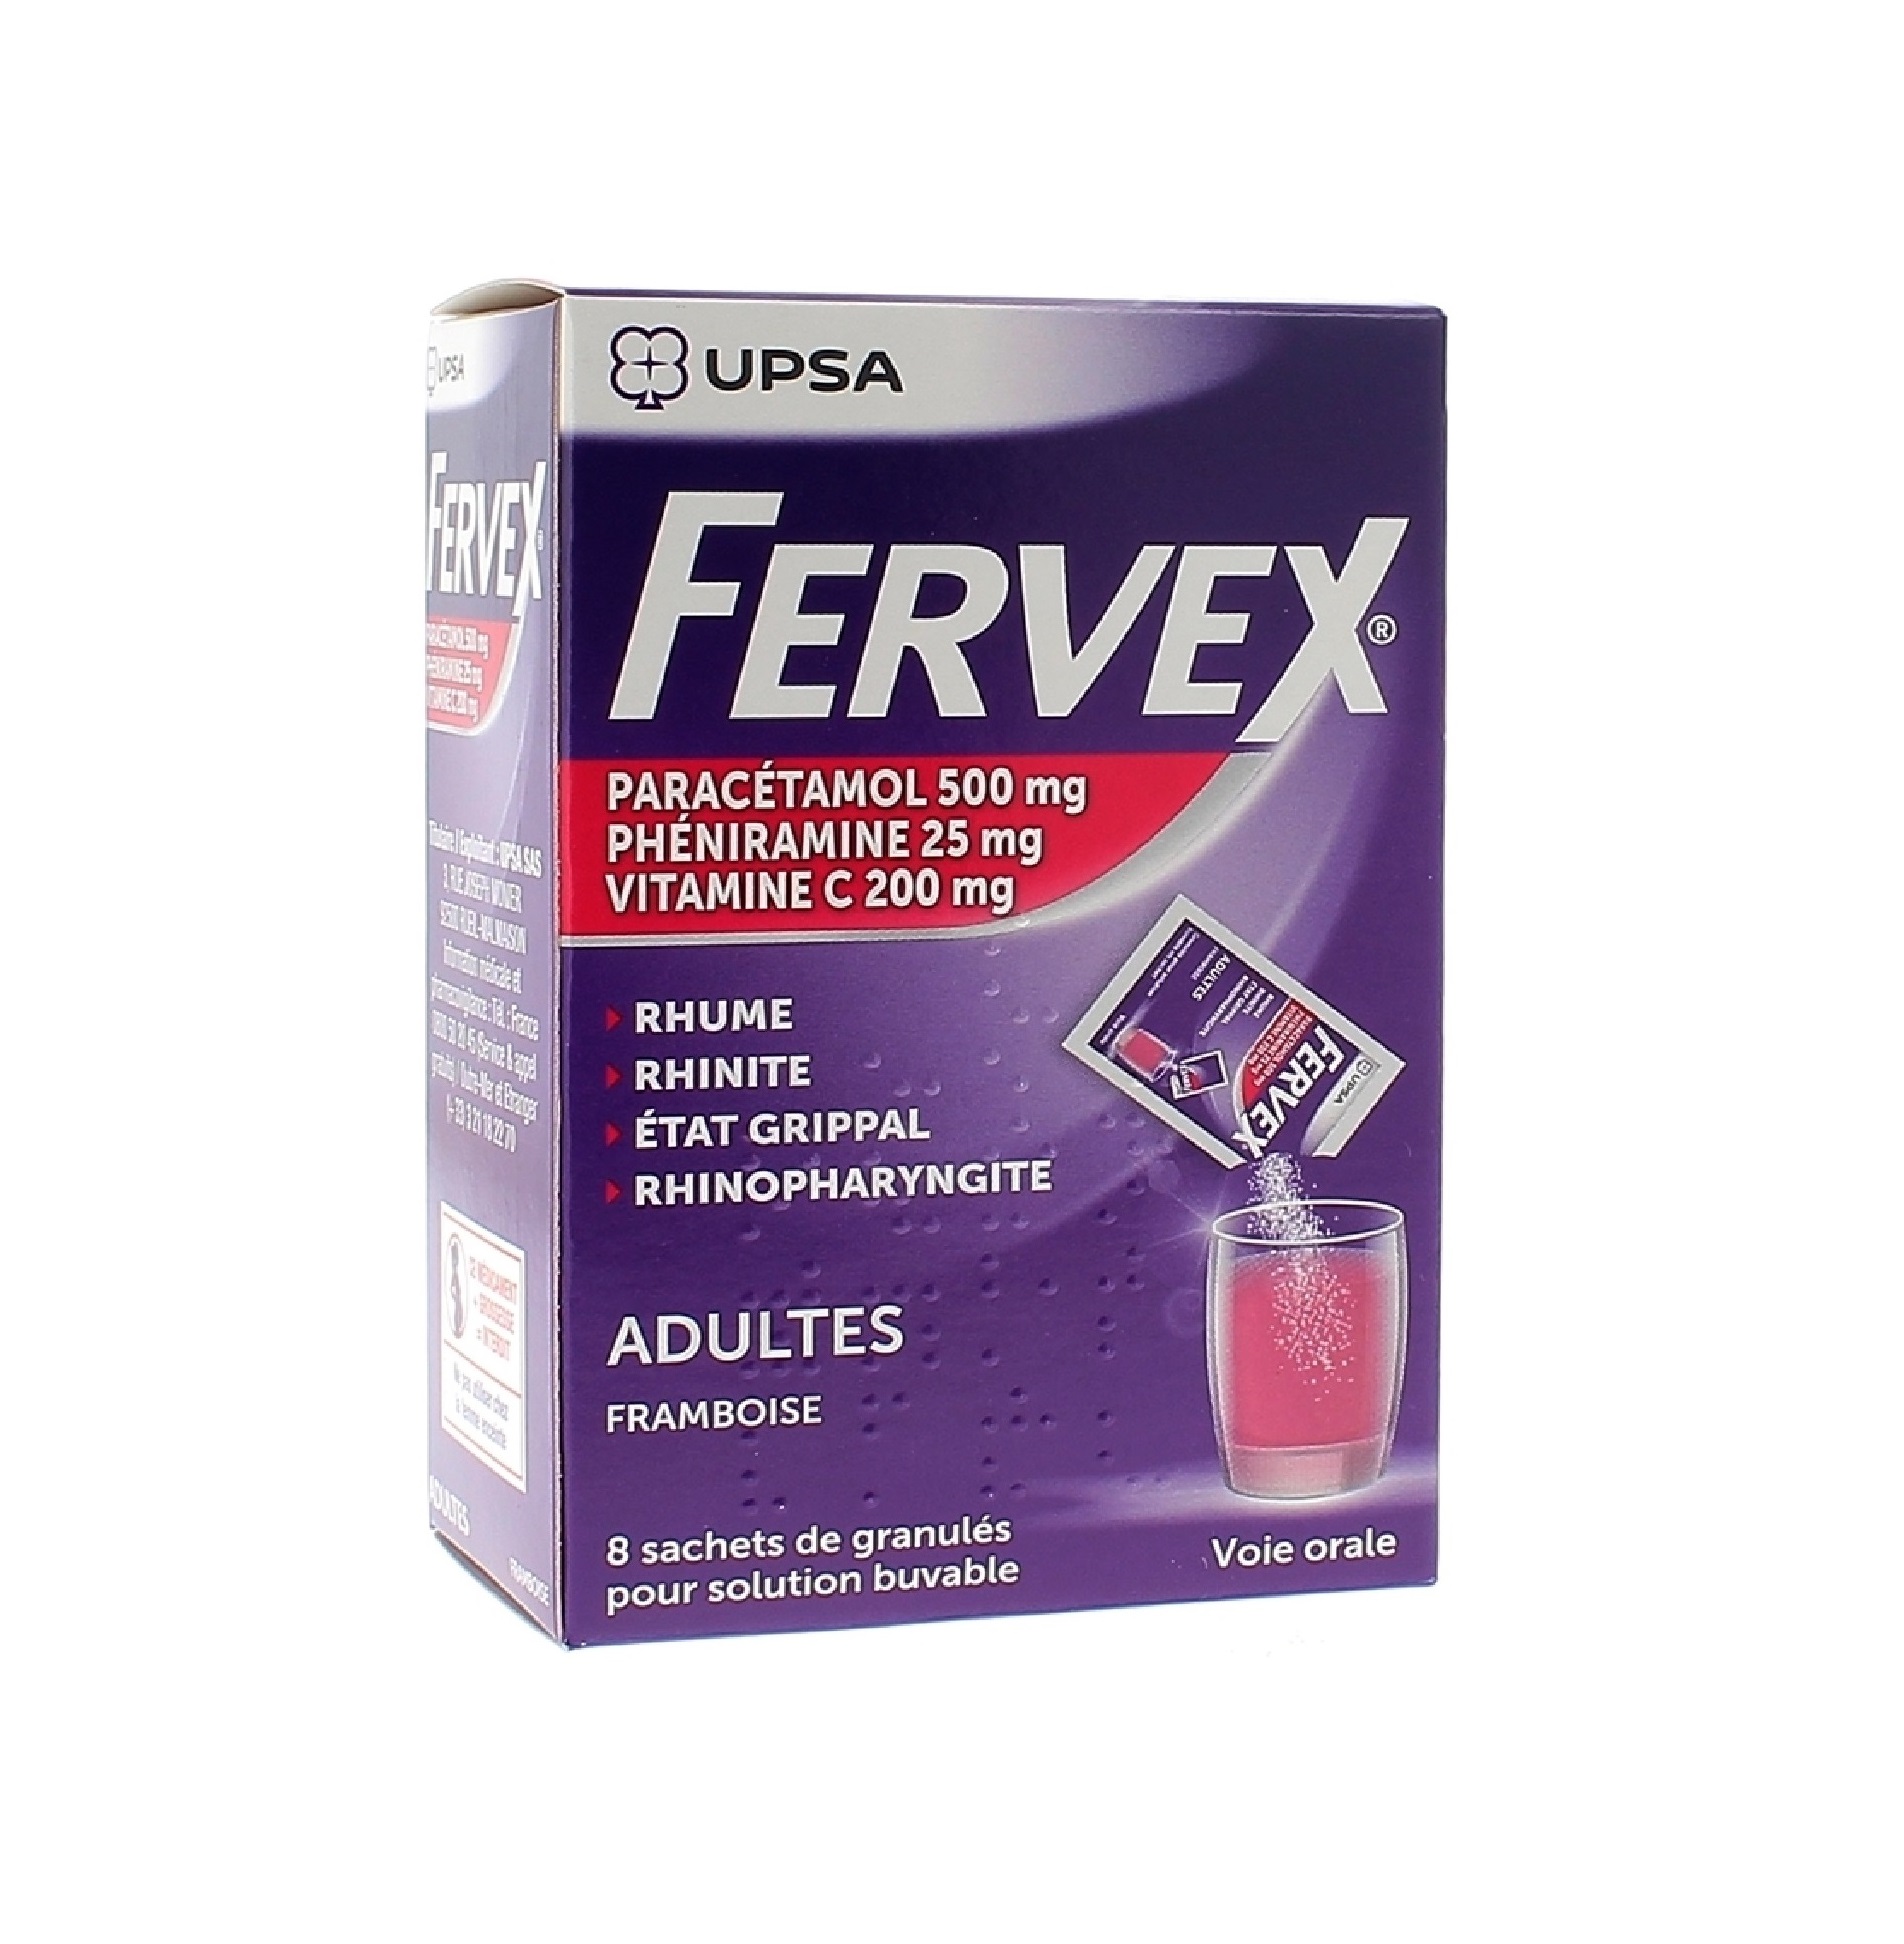 Buy Fervex Raspberry Flavor 8 sachets online in the US pharmacy.